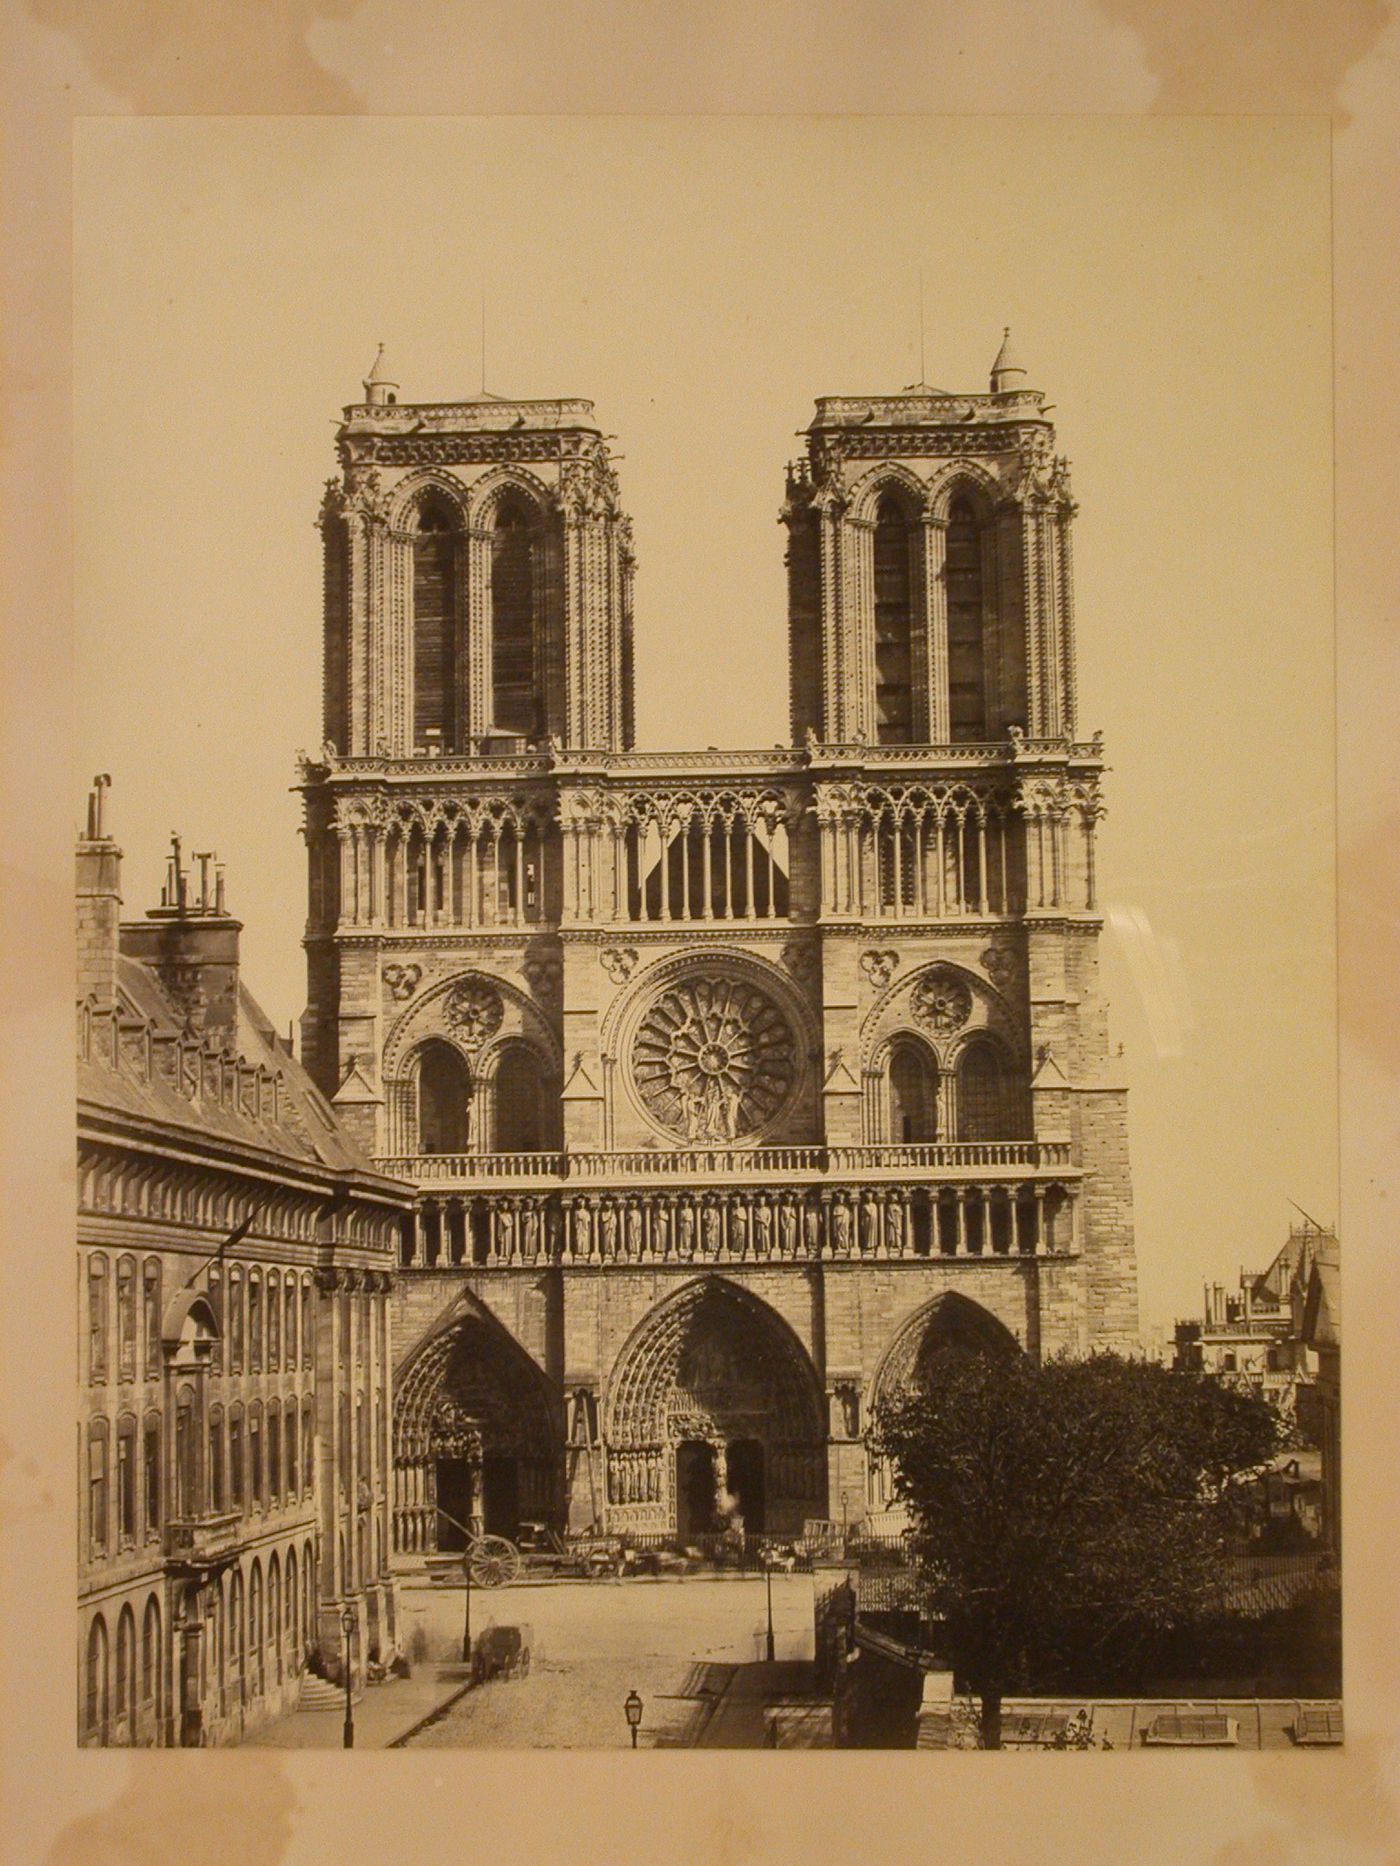 Notre-Dame, west front, Paris, France